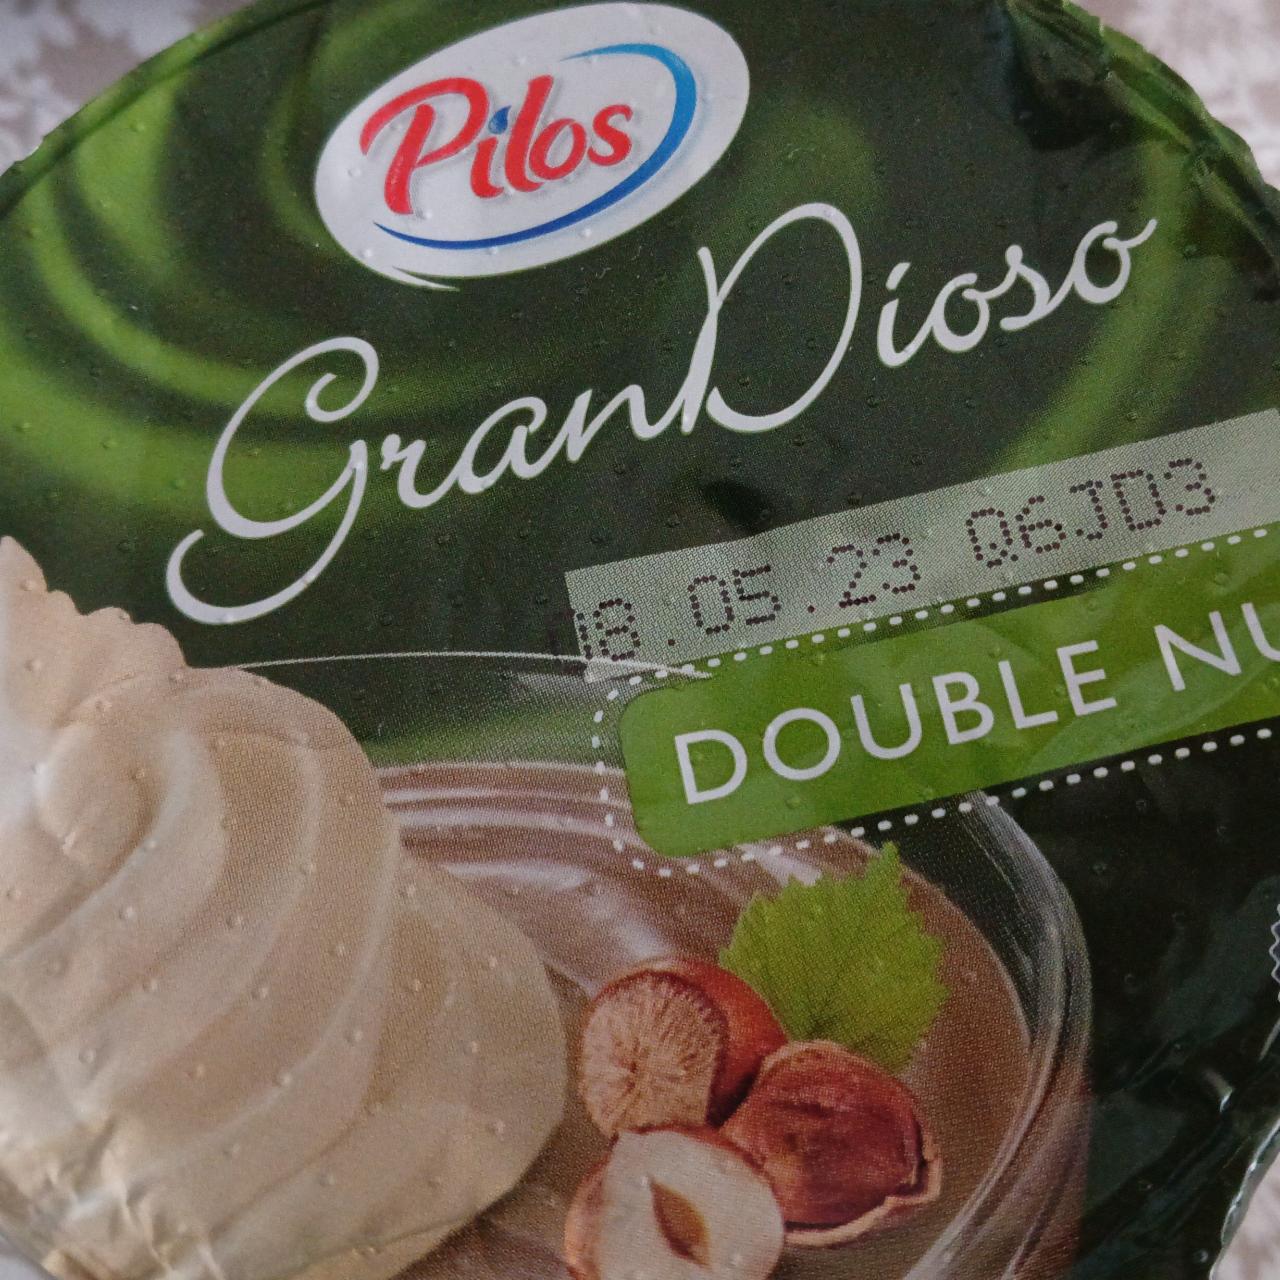 Фото - Десерт шоколадный ореховый Double Nut GranDioso Pilos